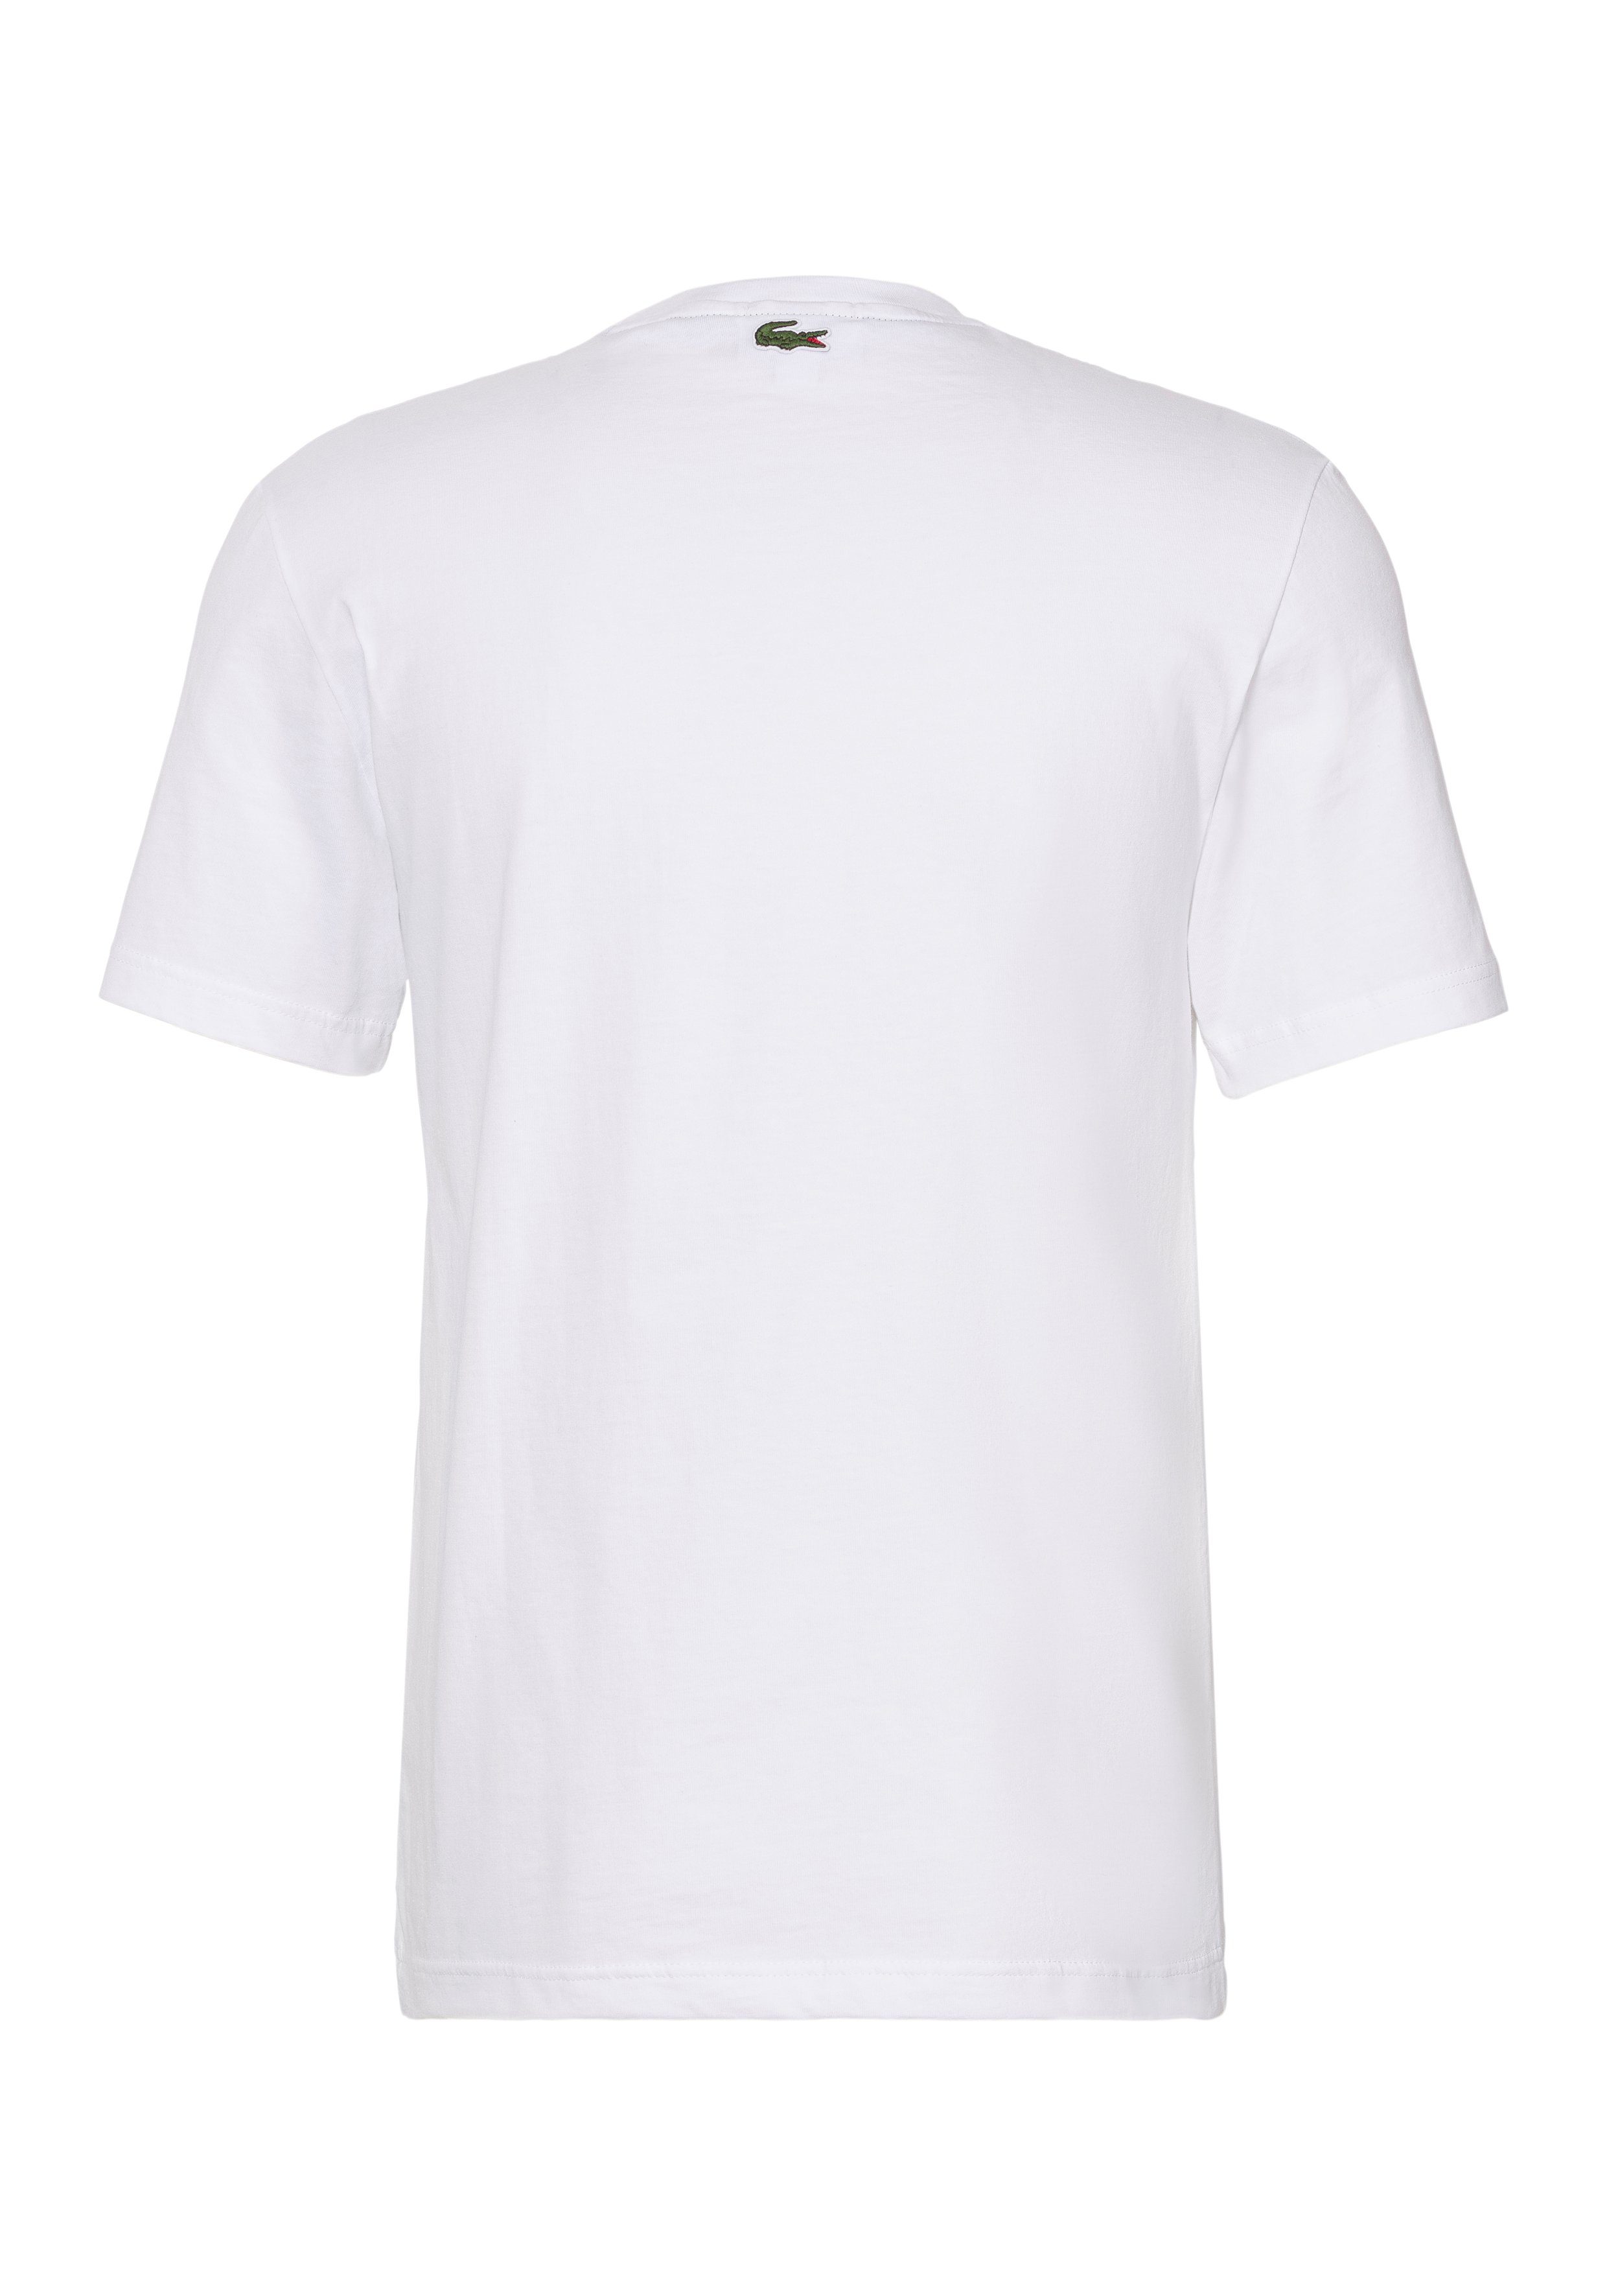 der T-Shirt Brust WHITE mit Lacoste T-SHIRT Lacoste Print auf